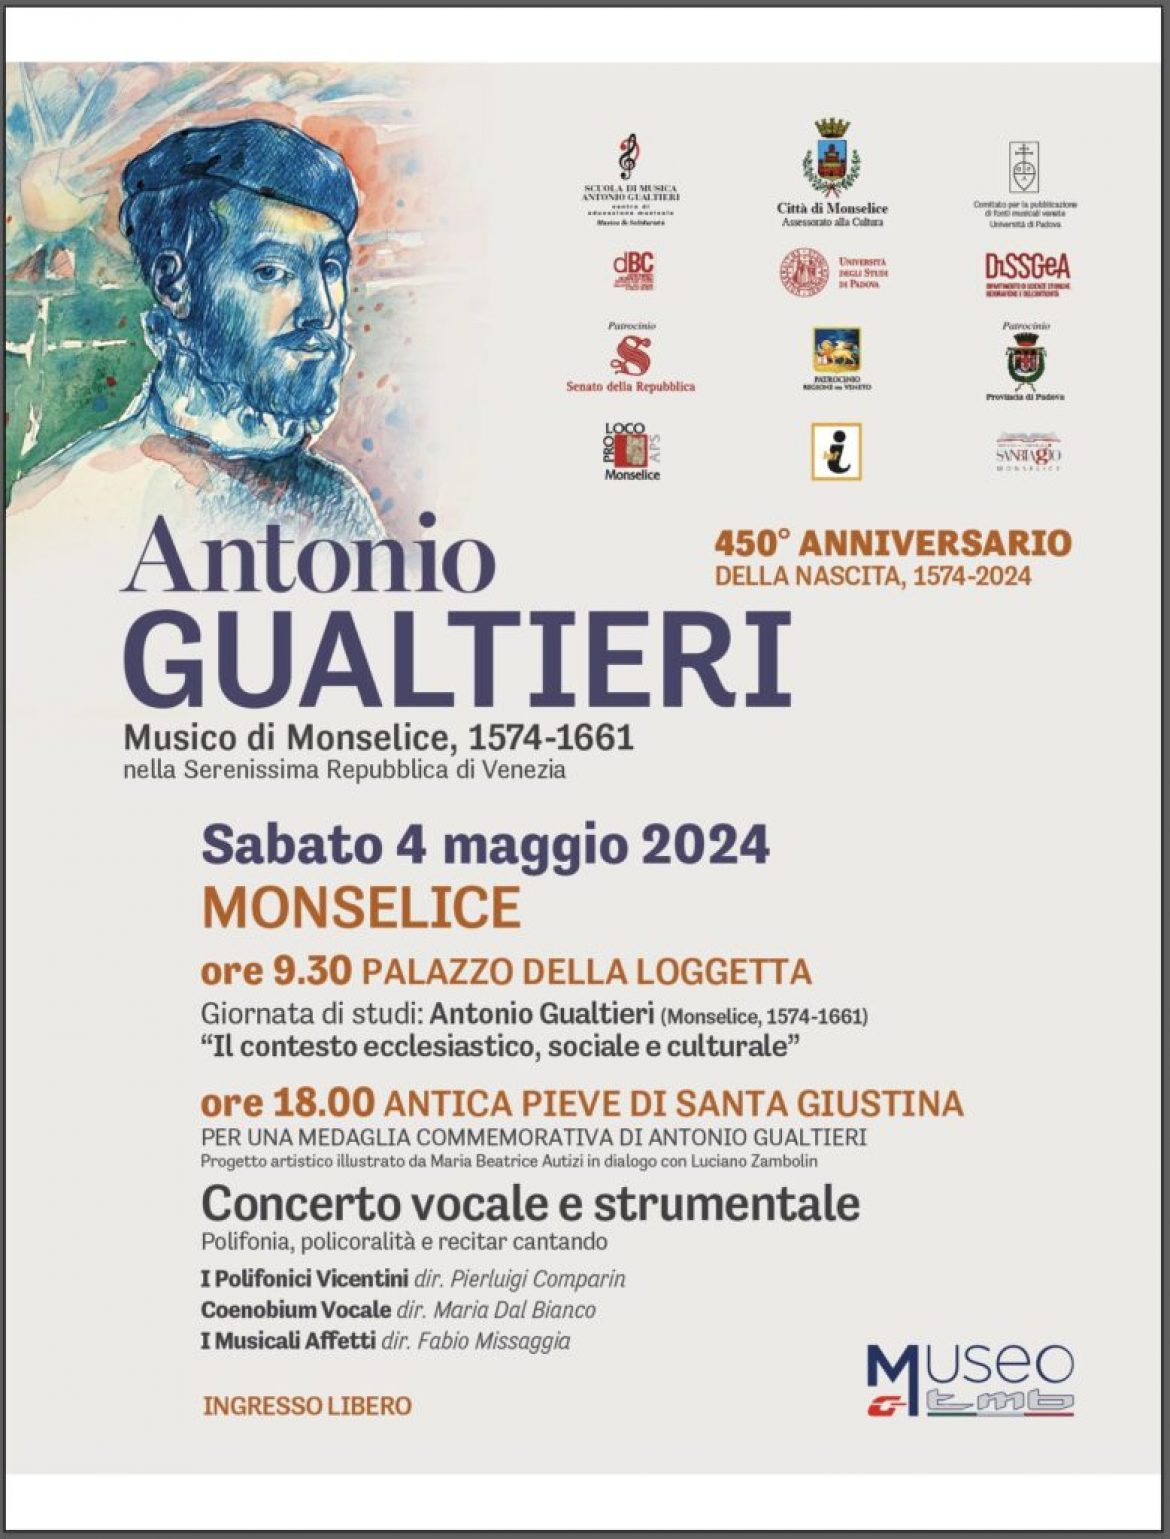 Celebrazioni per 450° anniversario della nascita di Antonio Gualtieri